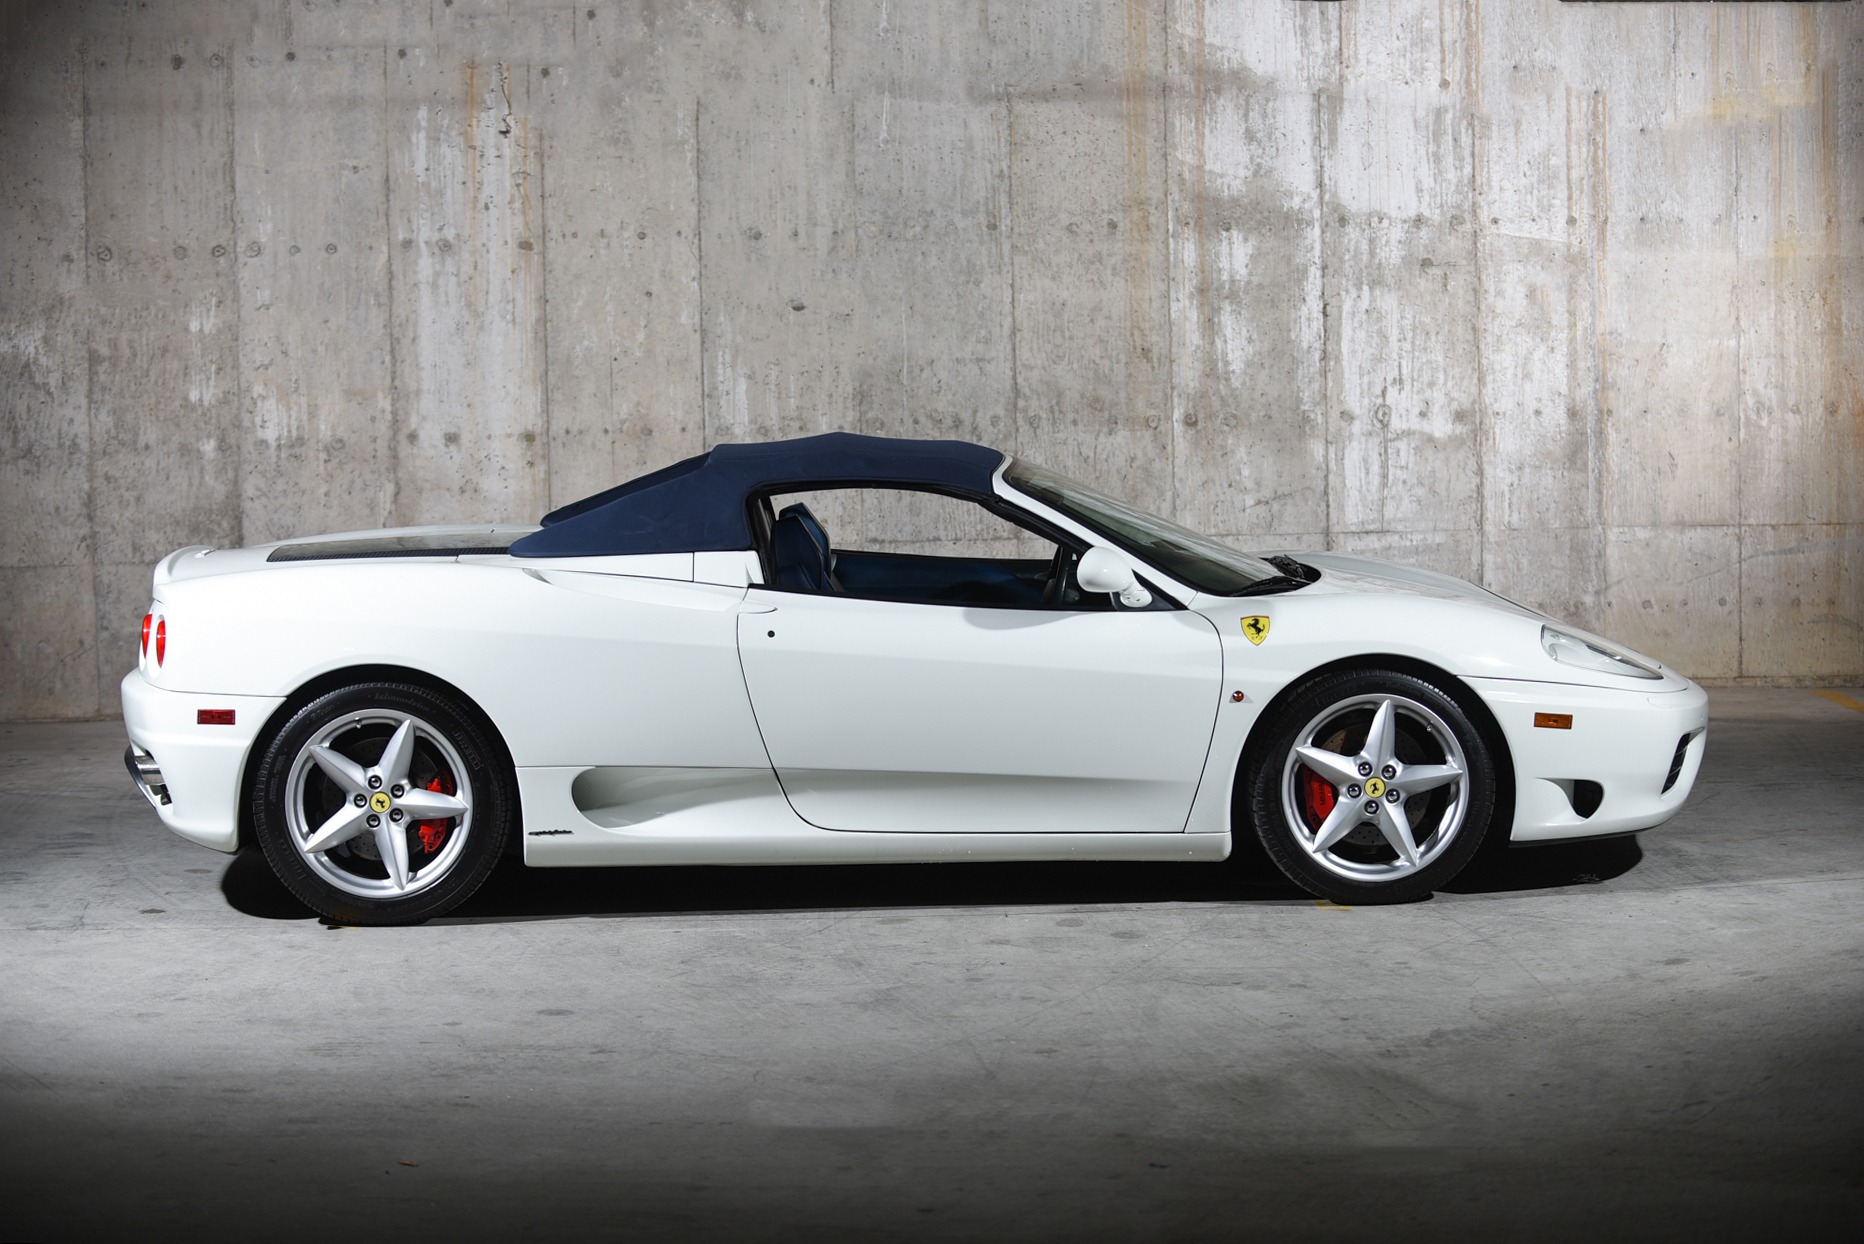 Used 2001 Ferrari 360 For Sale (Sold)  Ryan Friedman Motor Cars LLC Stock  #222C